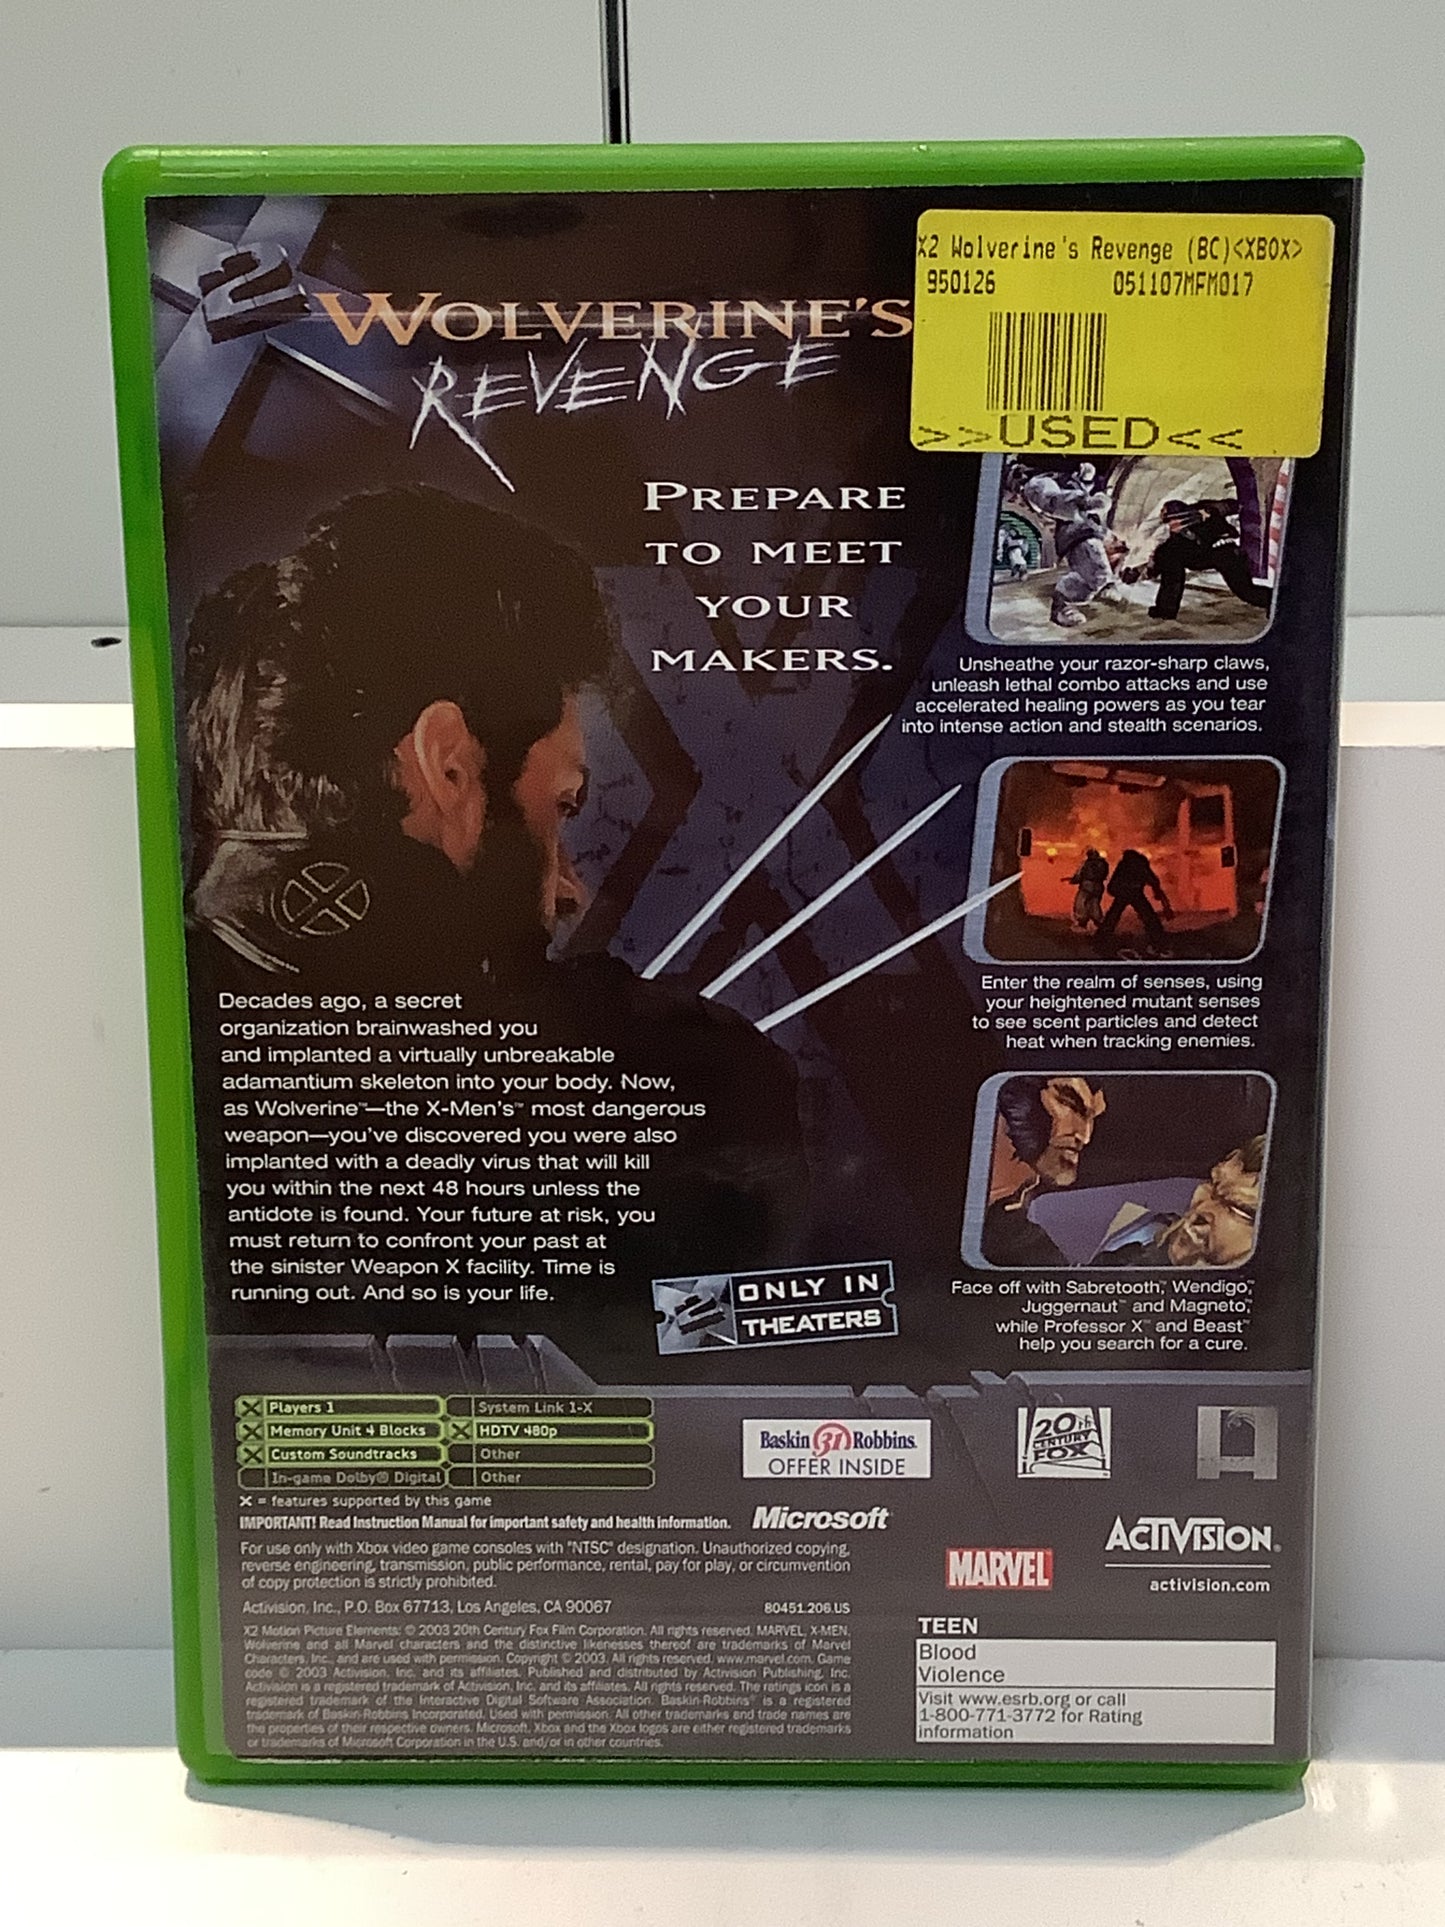 X2 Wolverines Revenge - Xbox